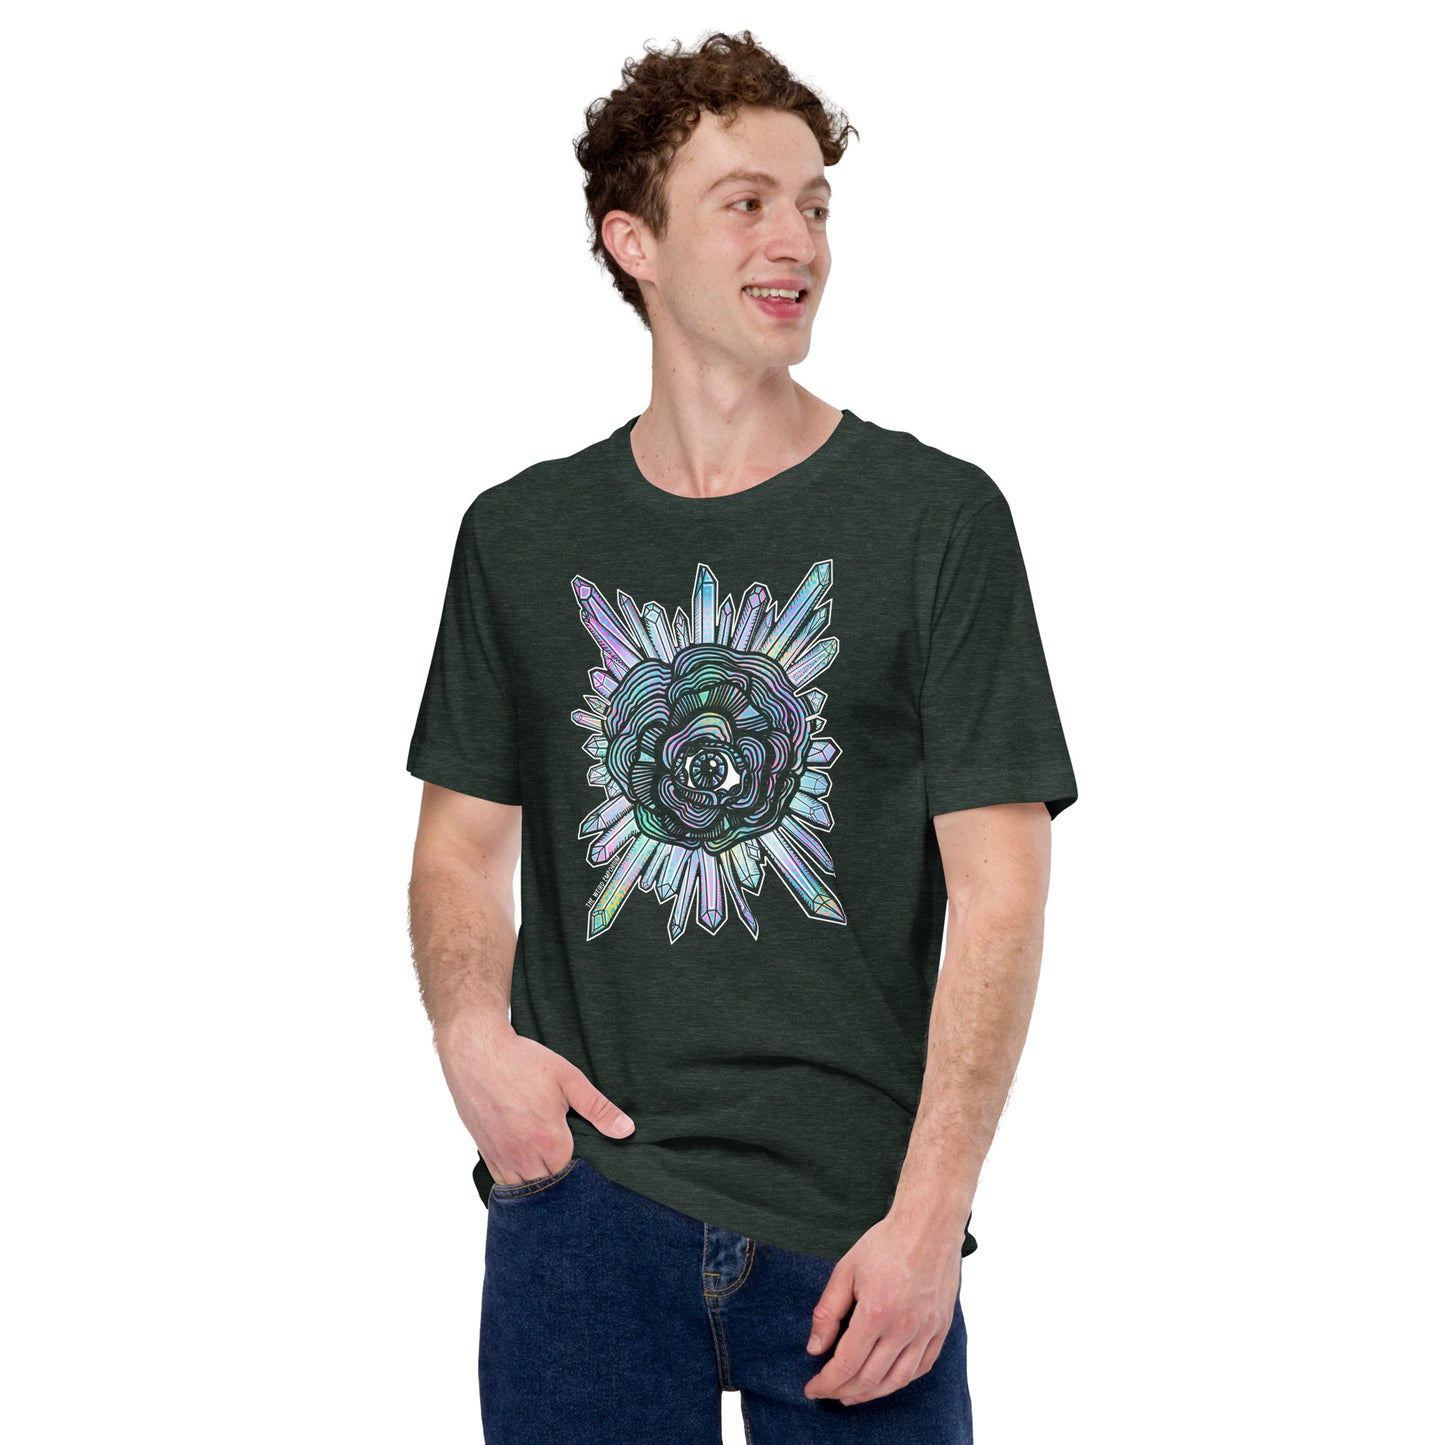 Eyeball Flower Crystals Shirt, Spooky Season Shirt, Stay Spooky Shirt, Pastel Goth Shirt, Spooky Aesthetic, the weird emporium